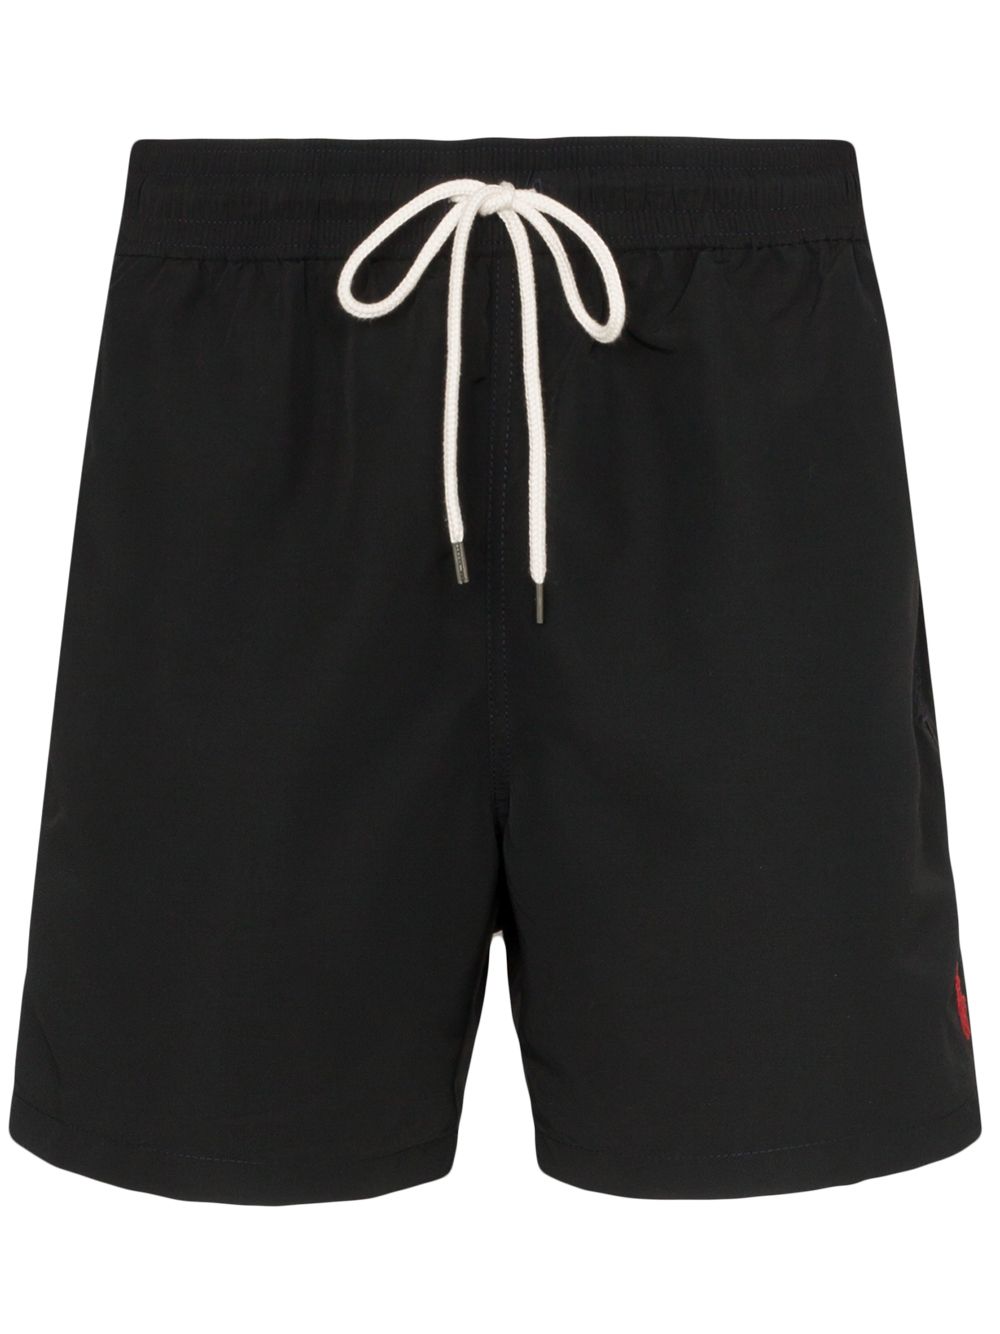 фото Polo ralph lauren плавки-шорты с вышитым логотипом